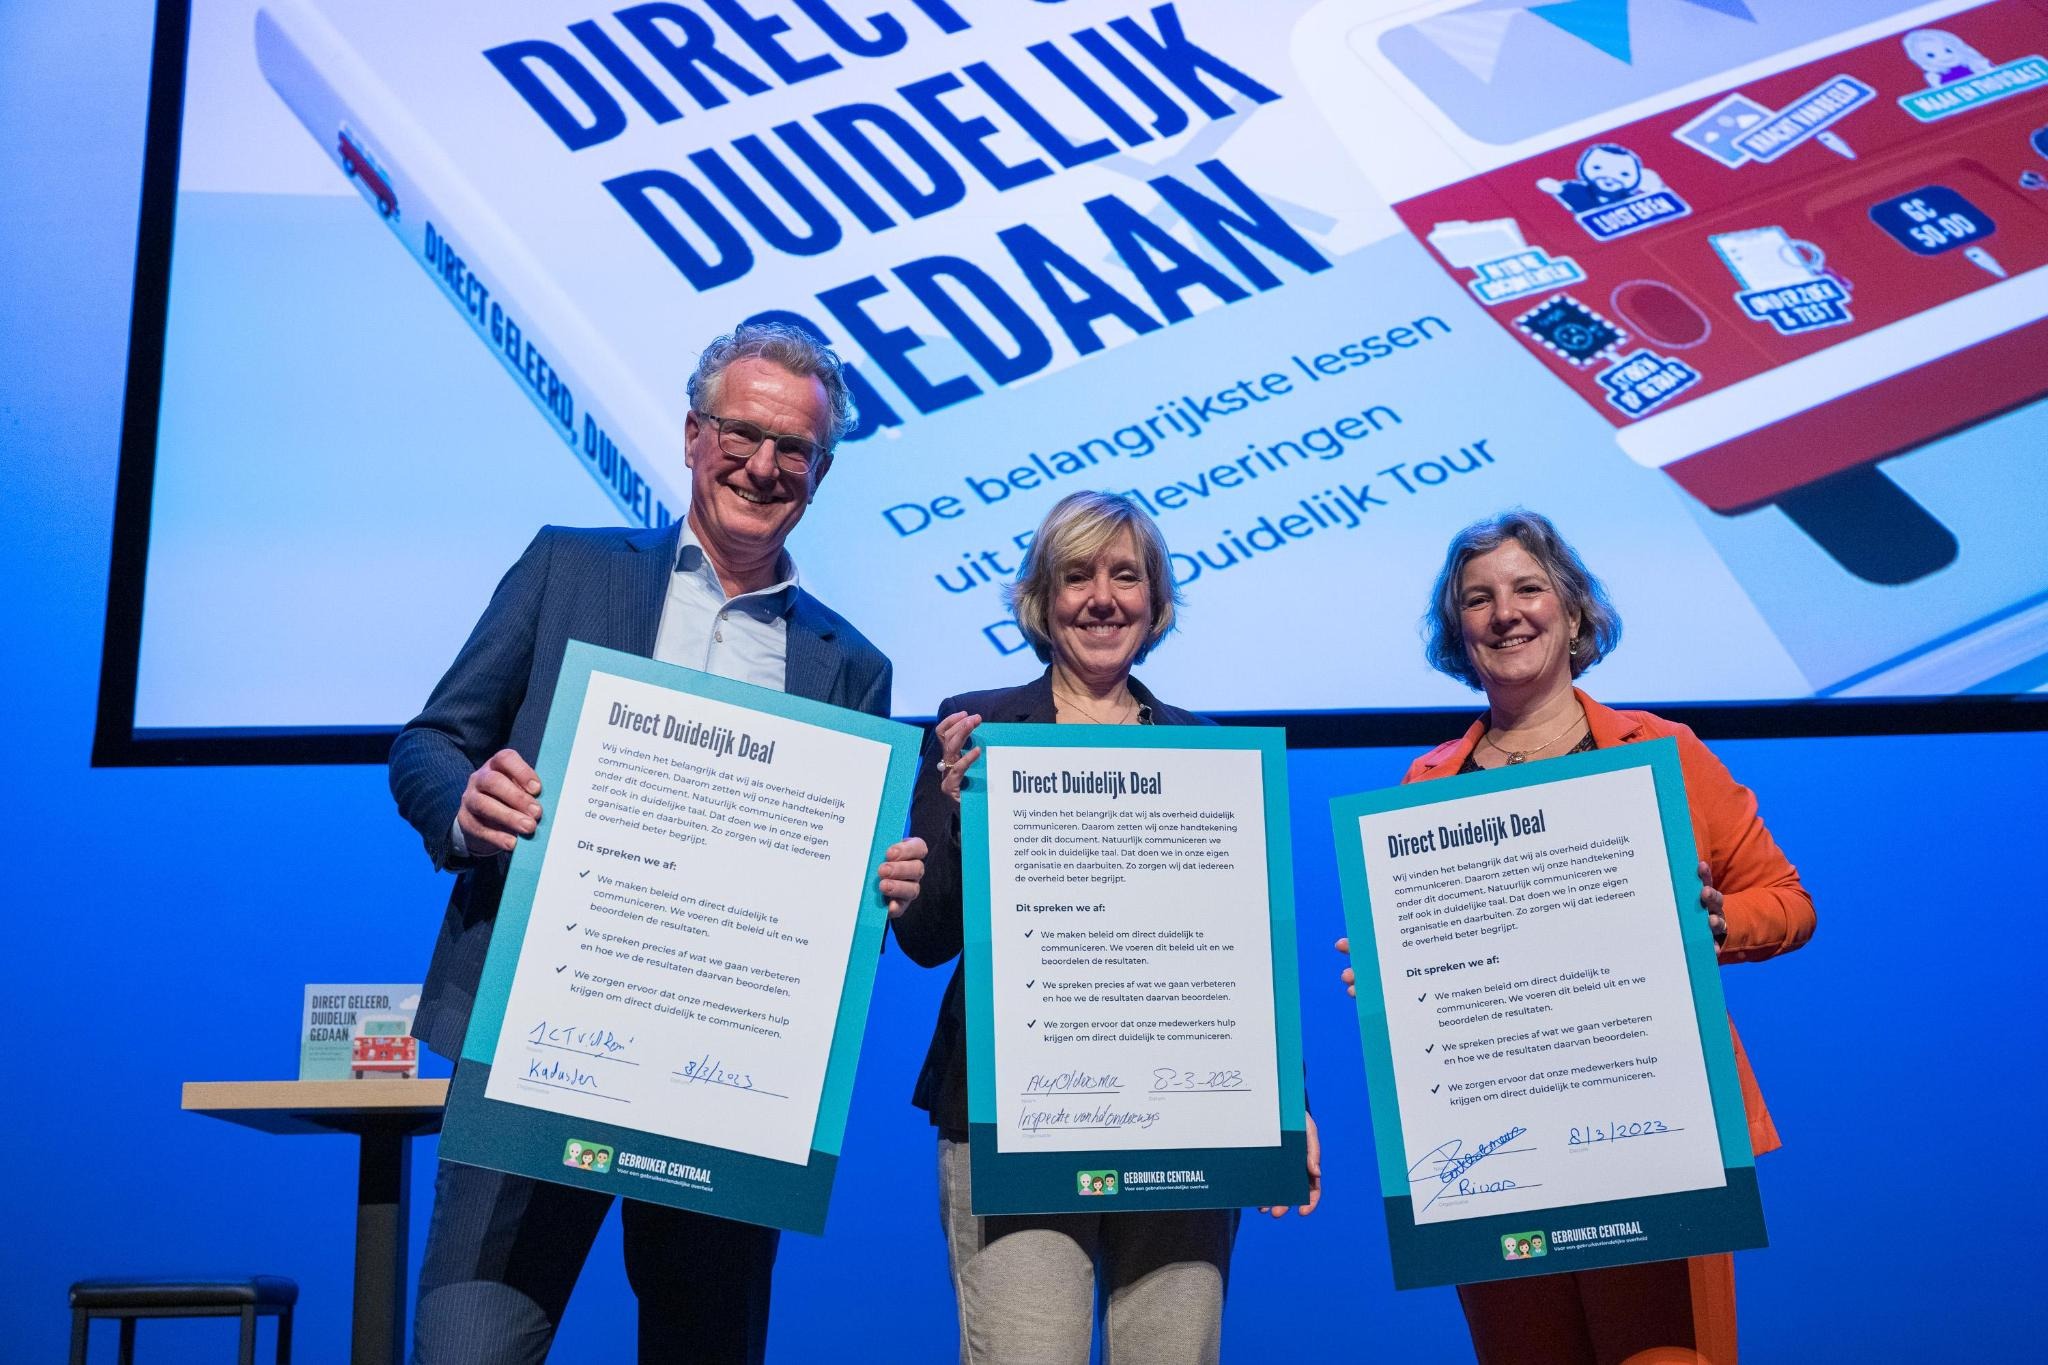 3 ondertekenaars laten de Direct Duidelijk Deal zien. Van links naar rechts: Hans van den Bemt (Kadaster), Aly Oldersma (Onderwijsinspectie) en Mariëlle Bartholomeus (Rivas Zorggroep)